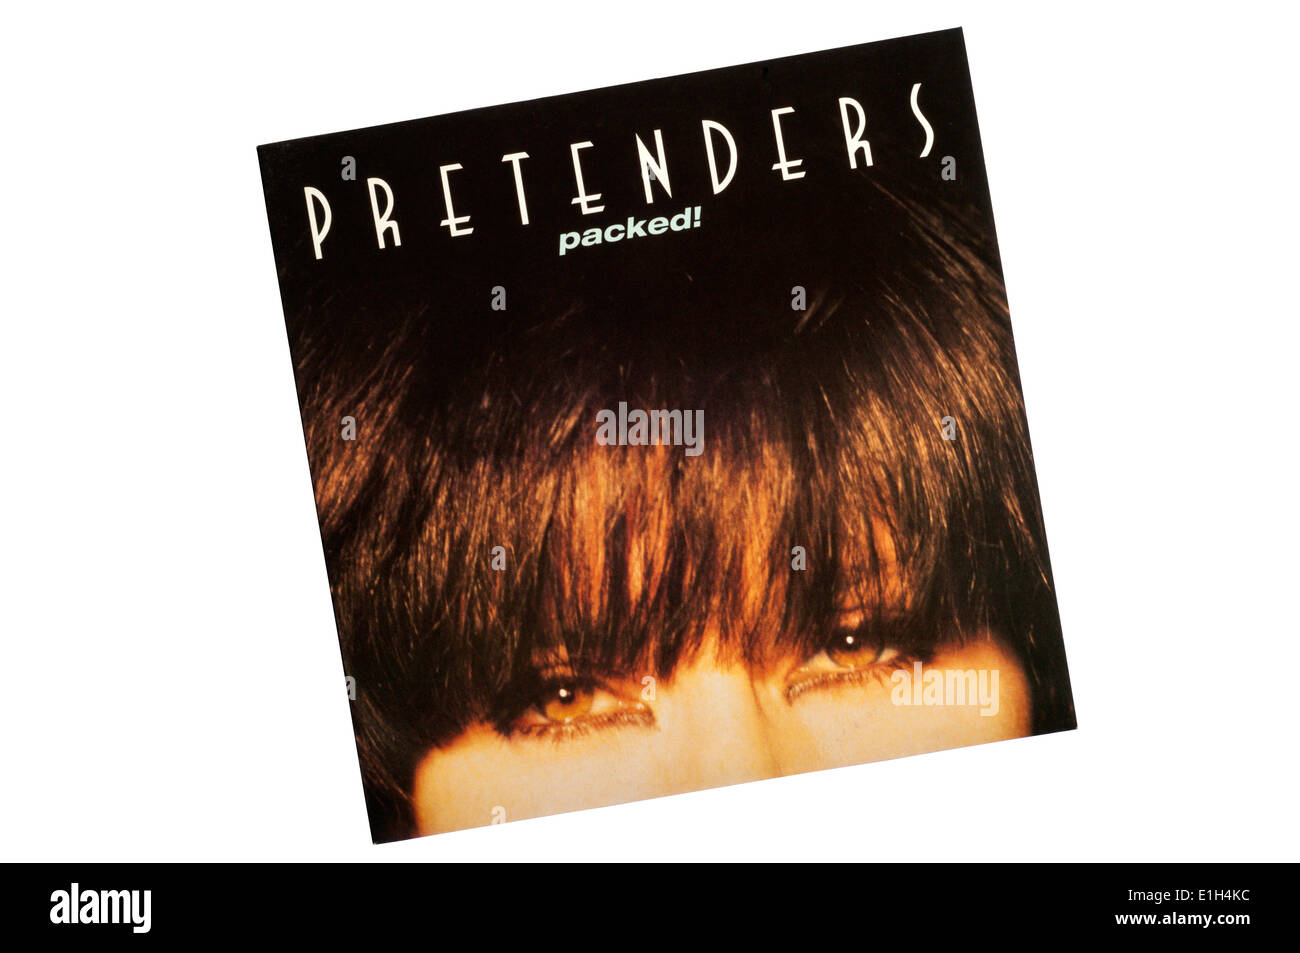 Comidas! Fue el quinto álbum por los pretendientes, lanzado en 1990. Chrissie Hynde eficazmente un álbum en solitario. Foto de stock